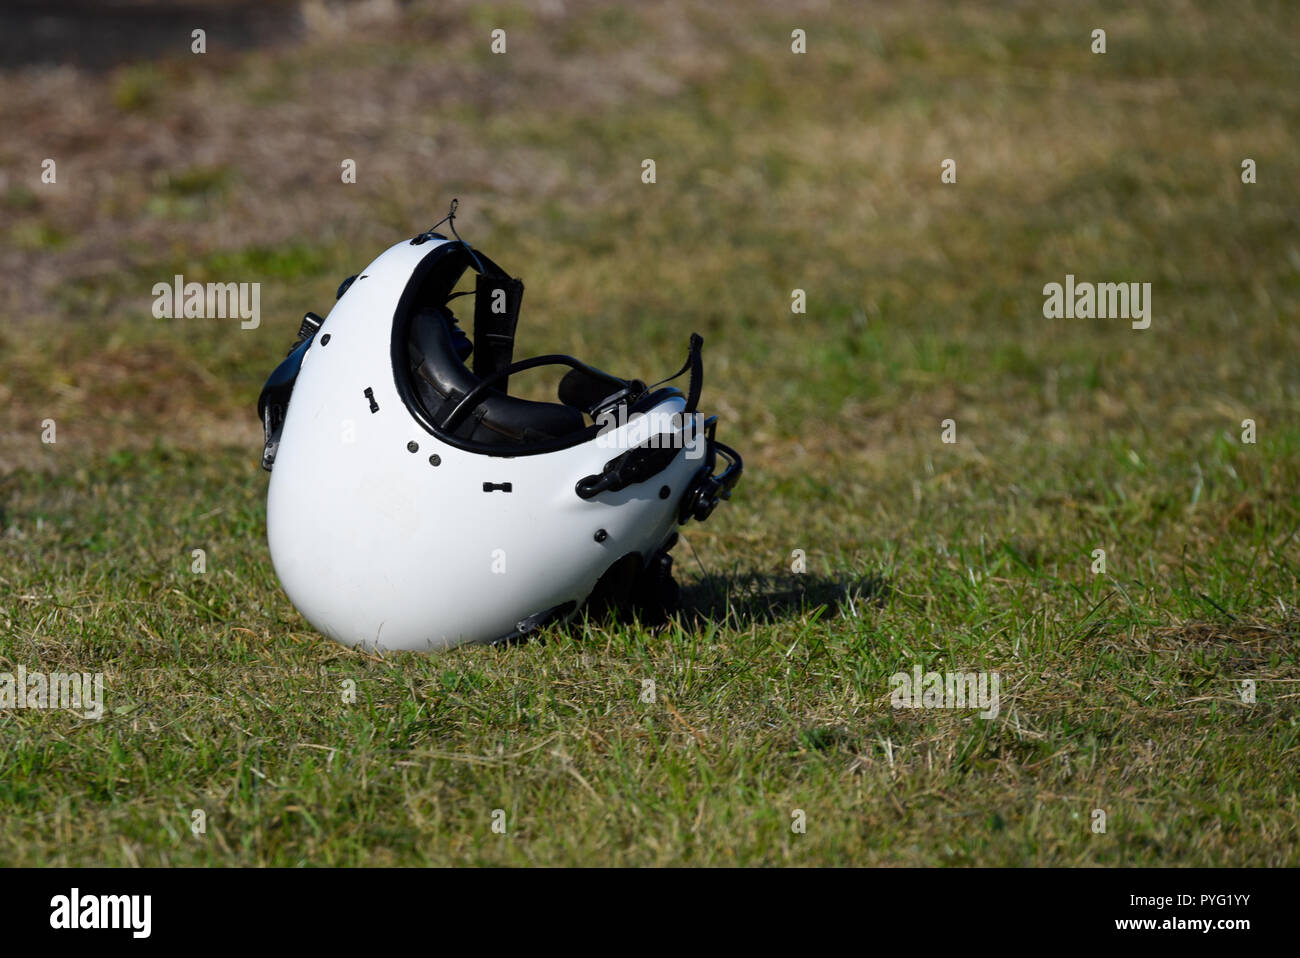 Un casco volante anonimo seduto sull'erba senza pilota. Pilota mancante. Scartato. Equipaggiamento volante isolato Foto Stock